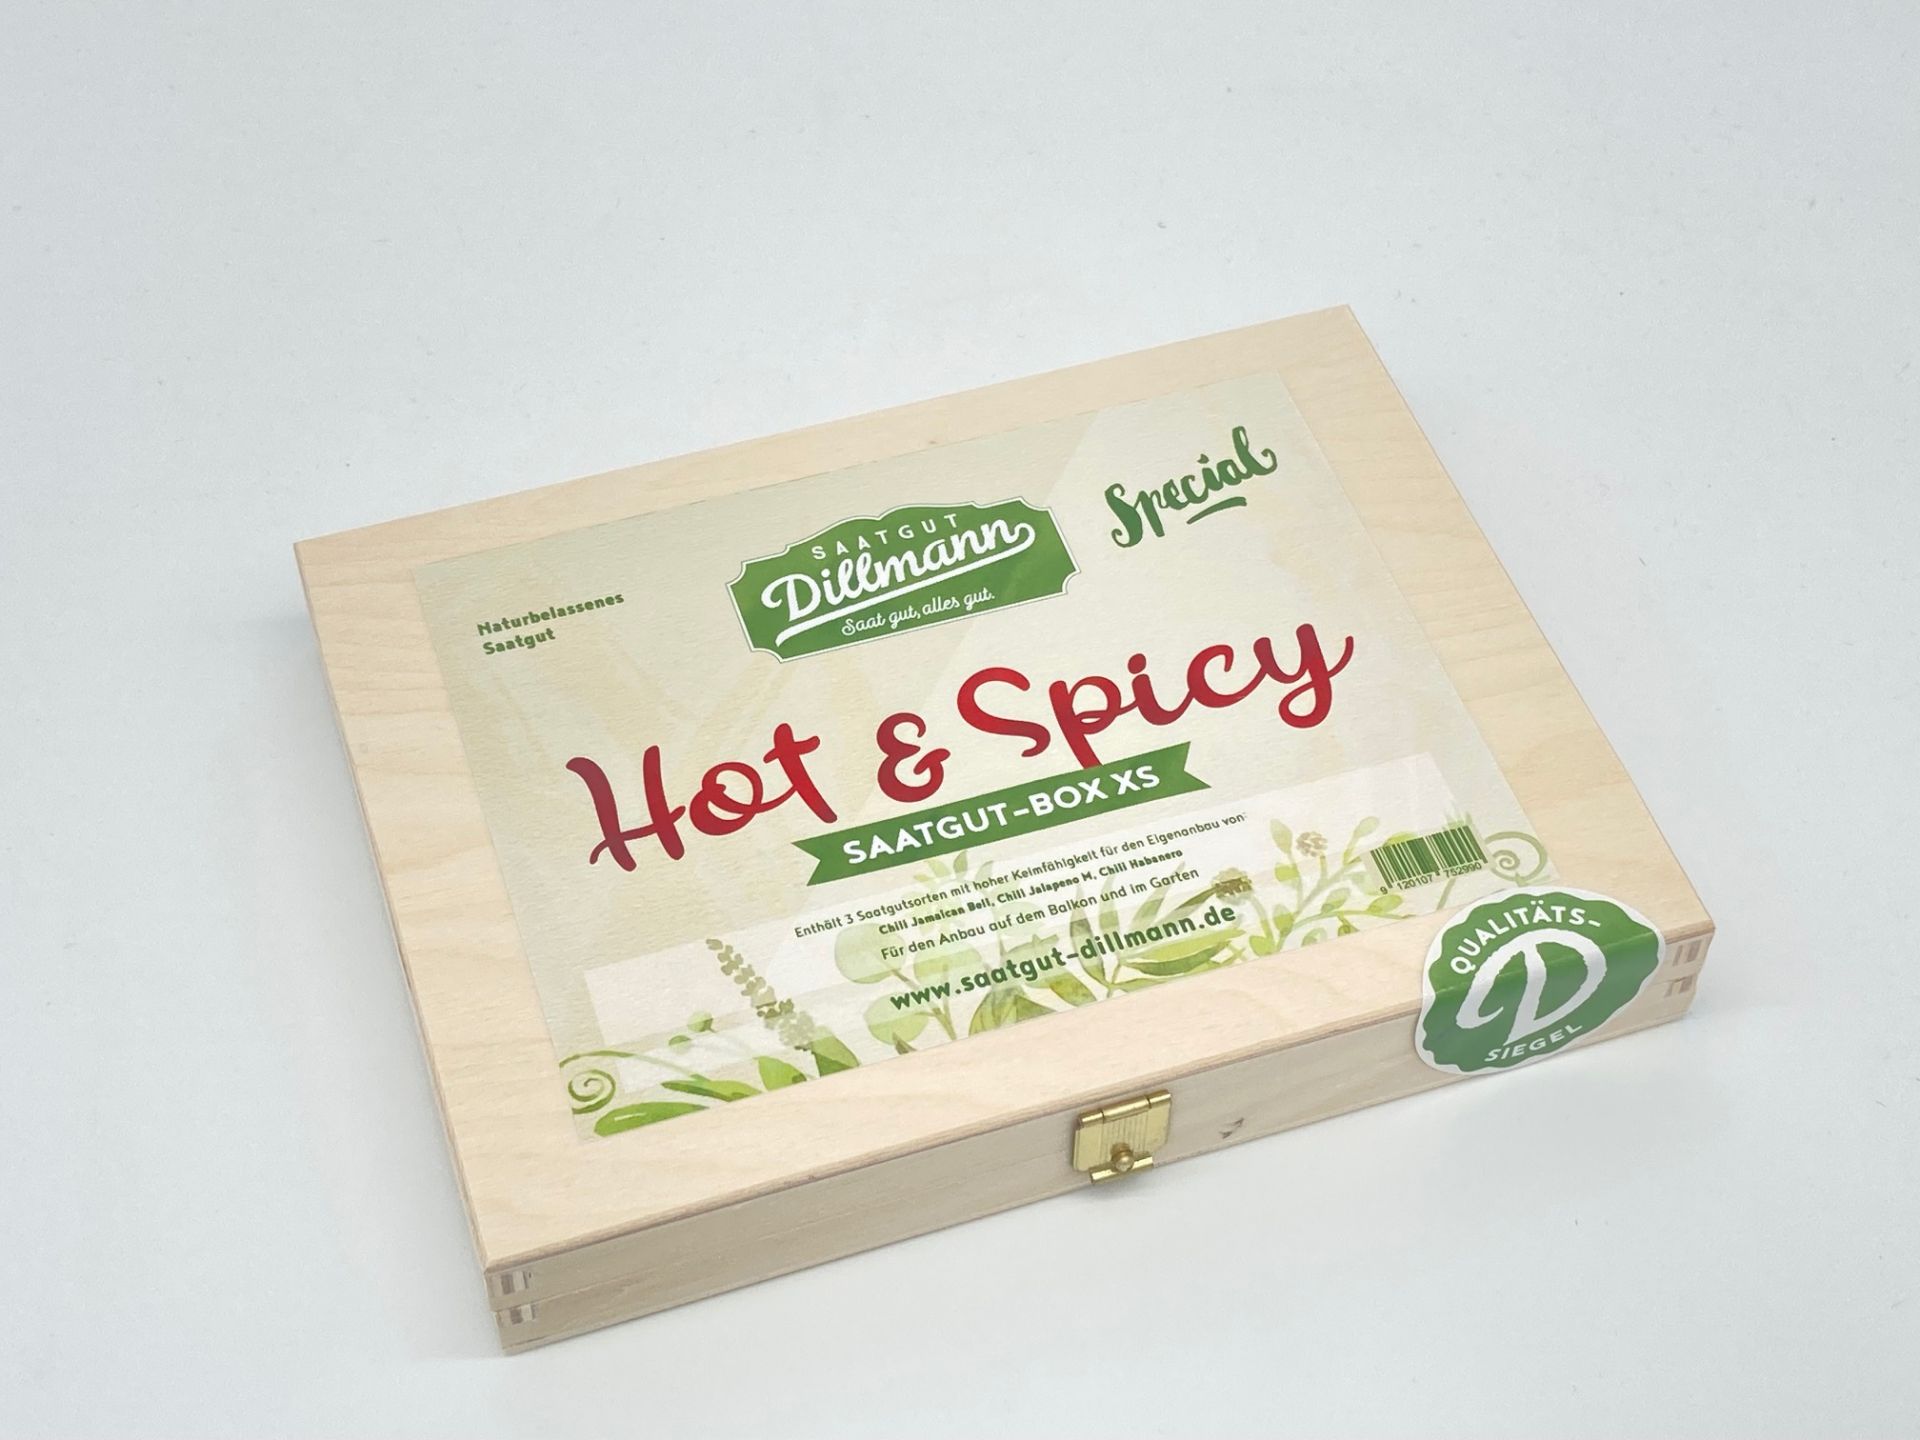 Saatgut-Box XS aus Holz – Hot & Spicy